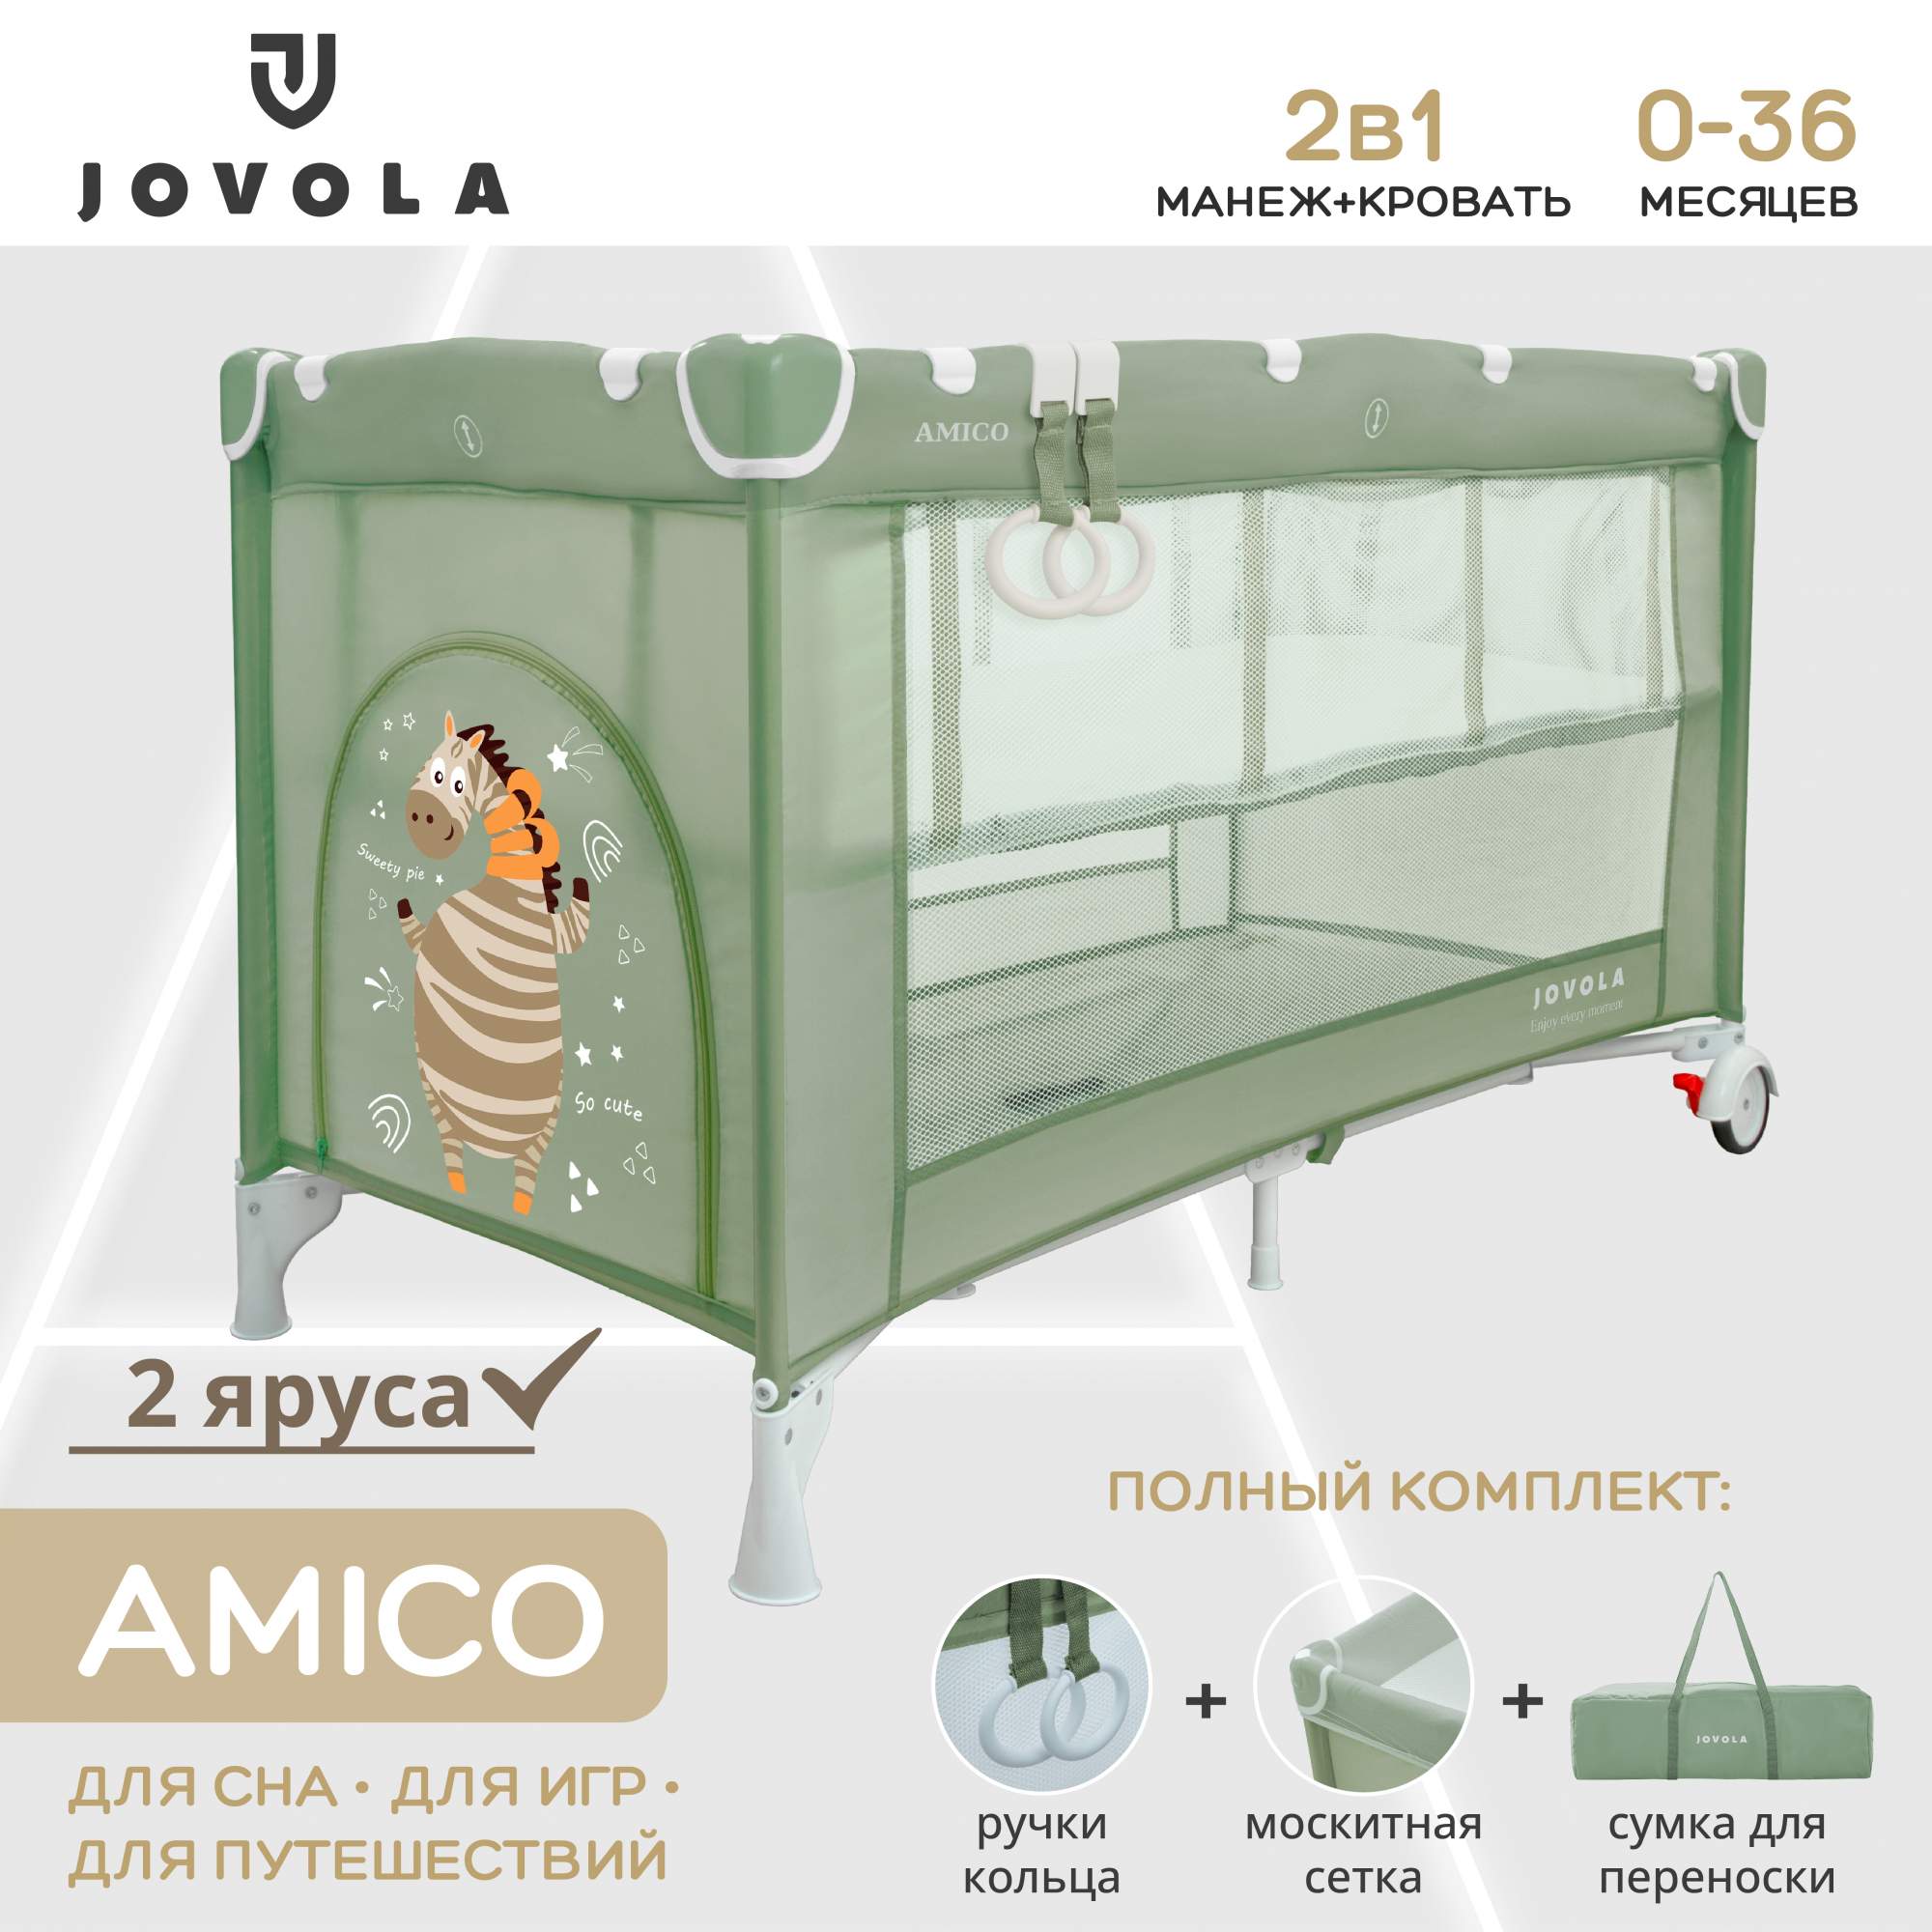 Манеж кровать детский JOVOLA AMICO для новорожденных складной 2 уровня зеленый прогулочная коляска indigo trip зеленый